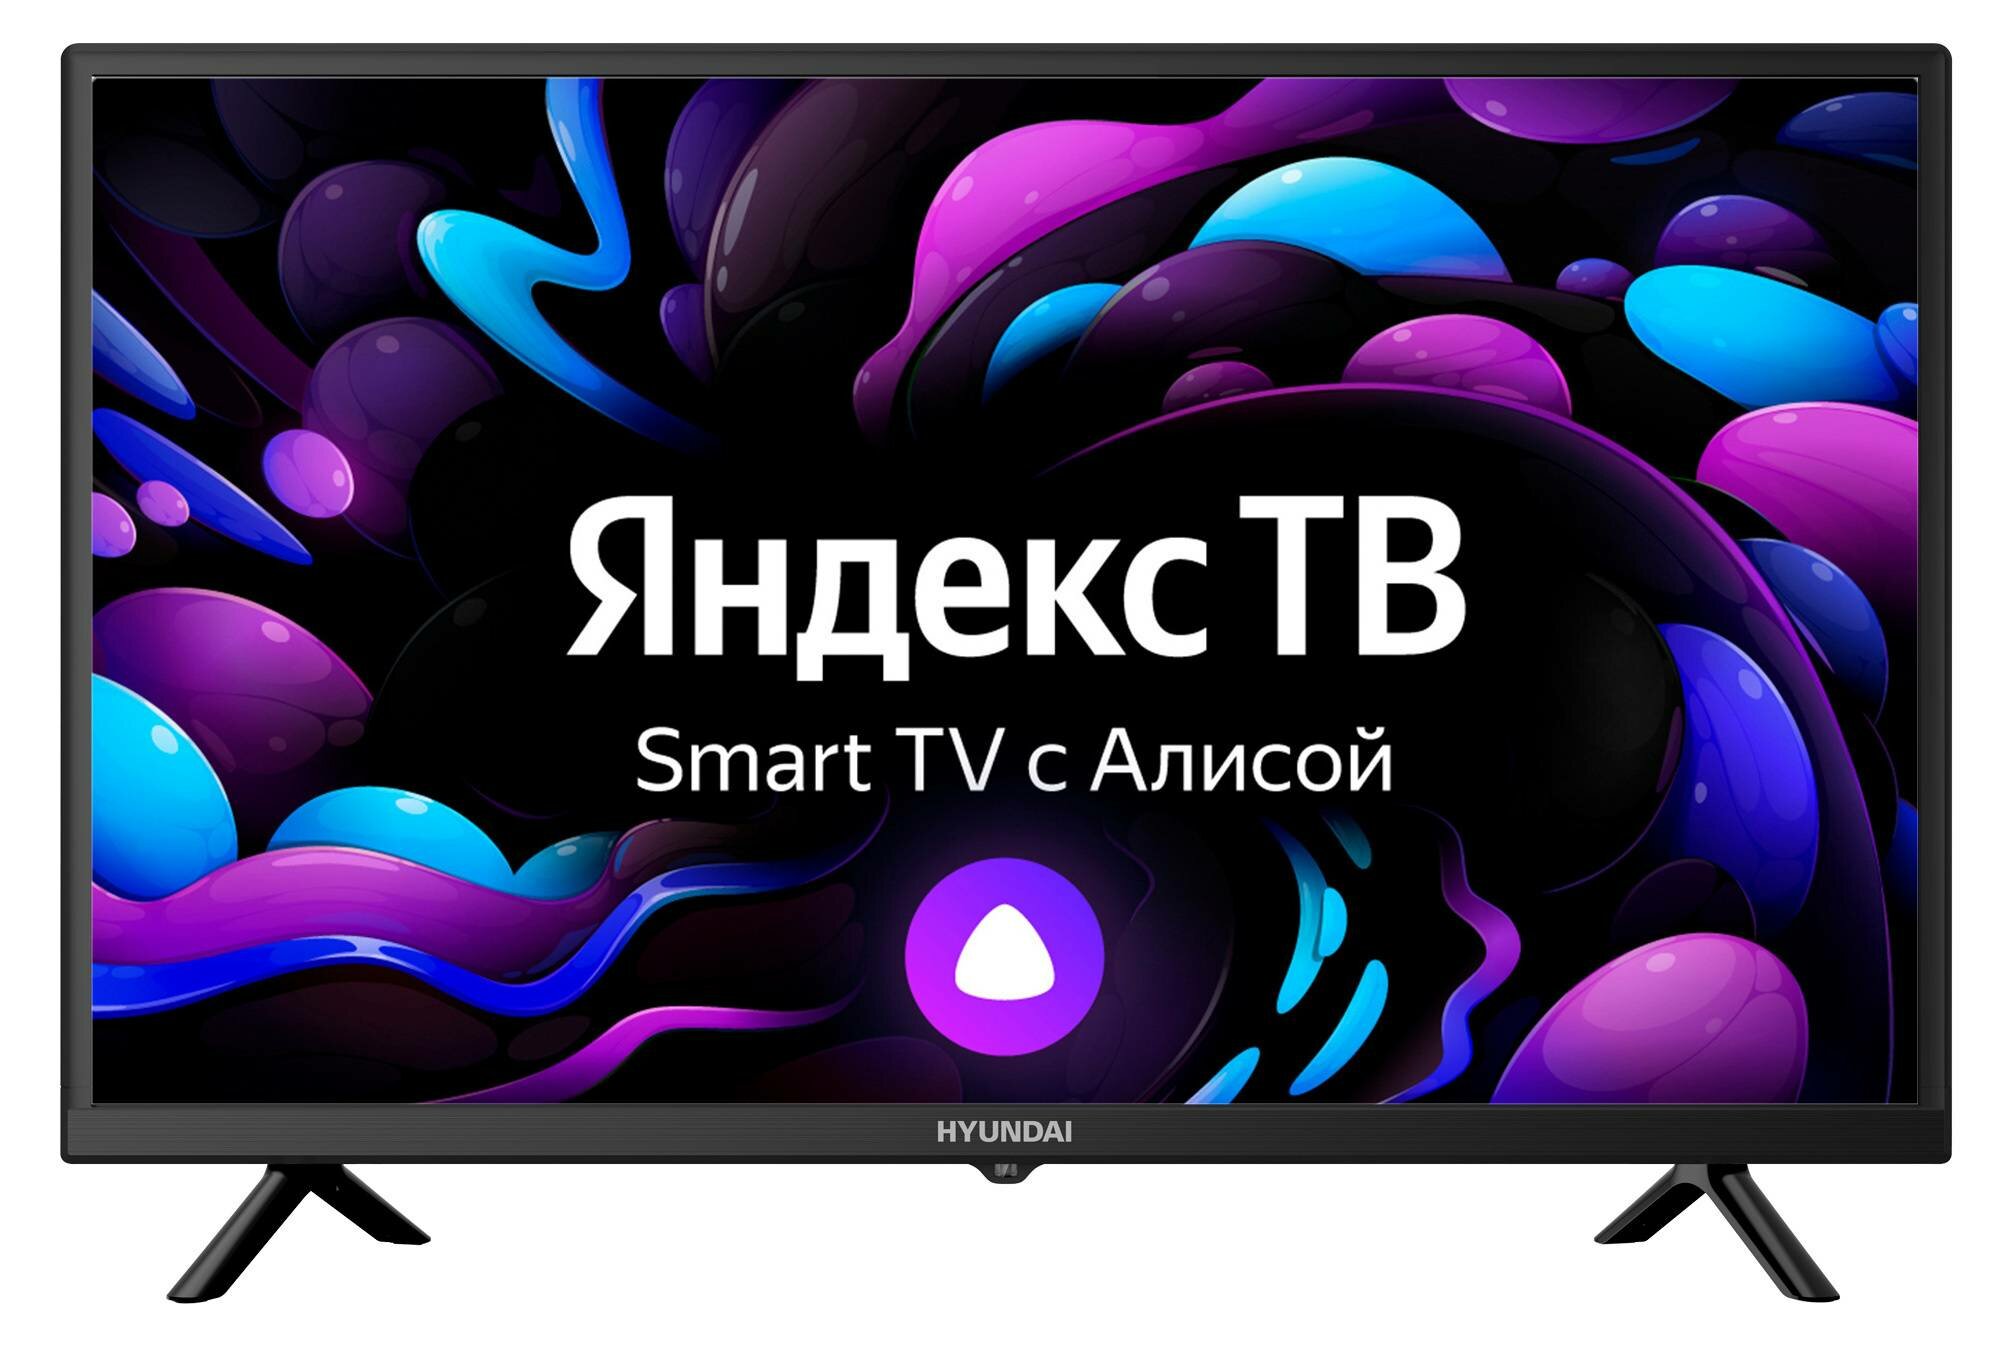 Телевизор Hyundai Яндекс.ТВ H-LED32BS5003, 32", LED, HD, черный